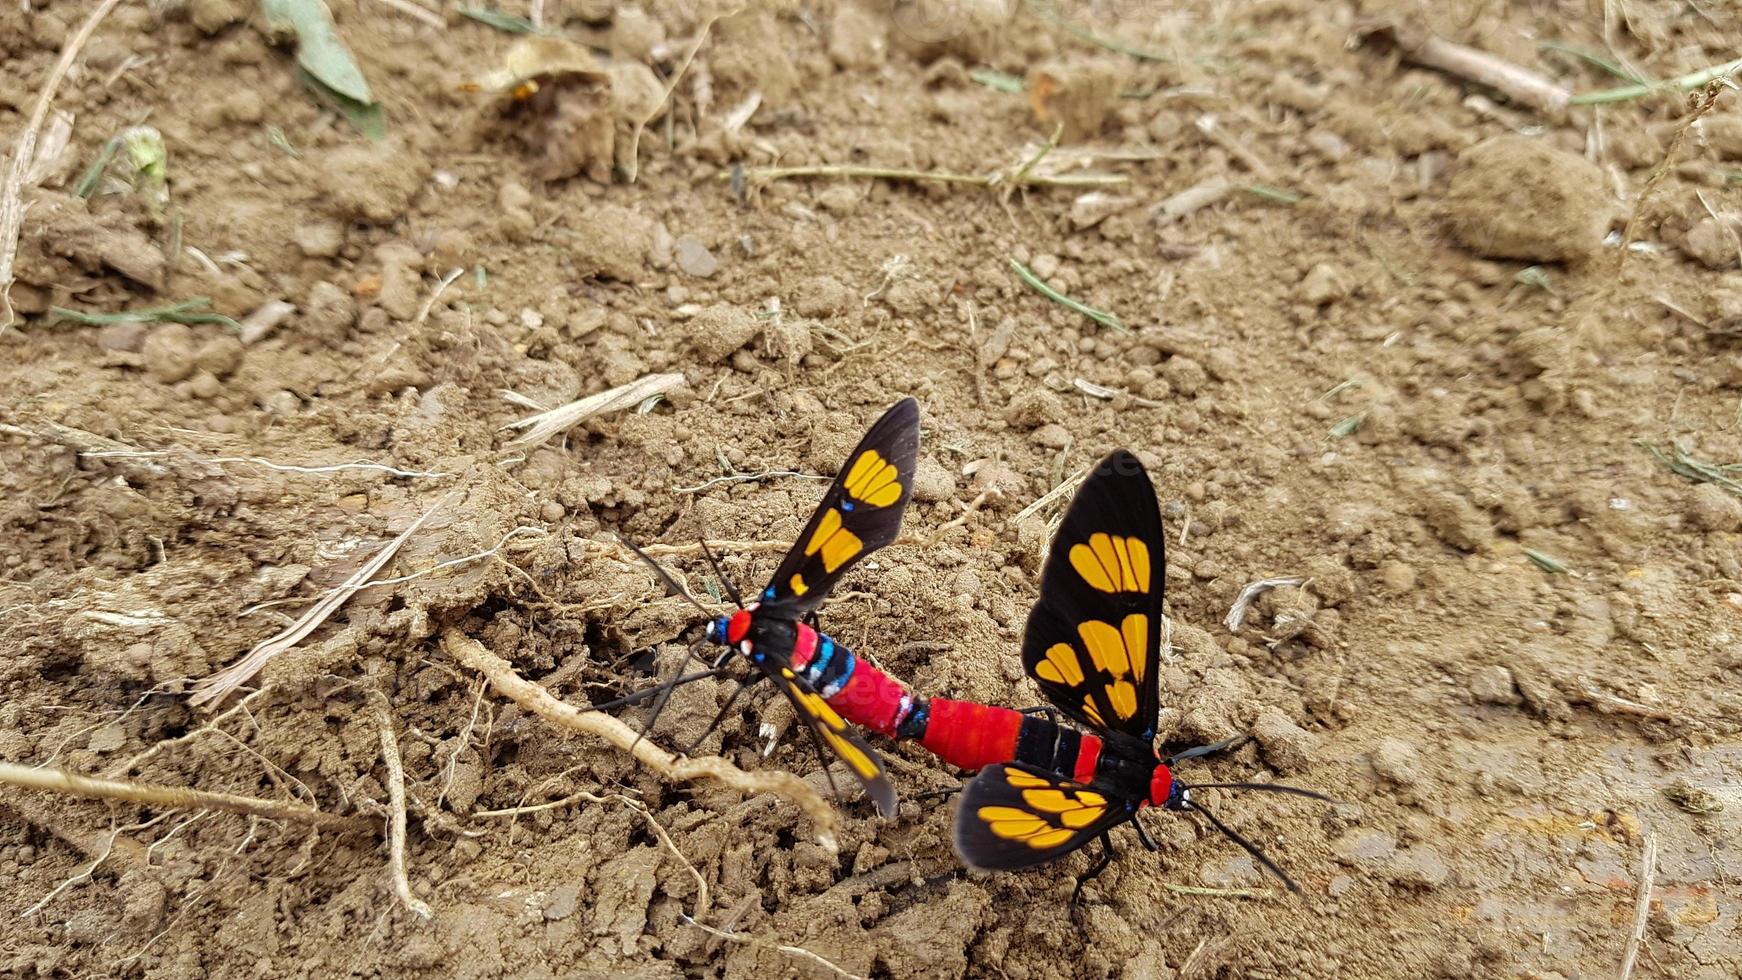 due insetti colorati che si accoppiano a terra foto